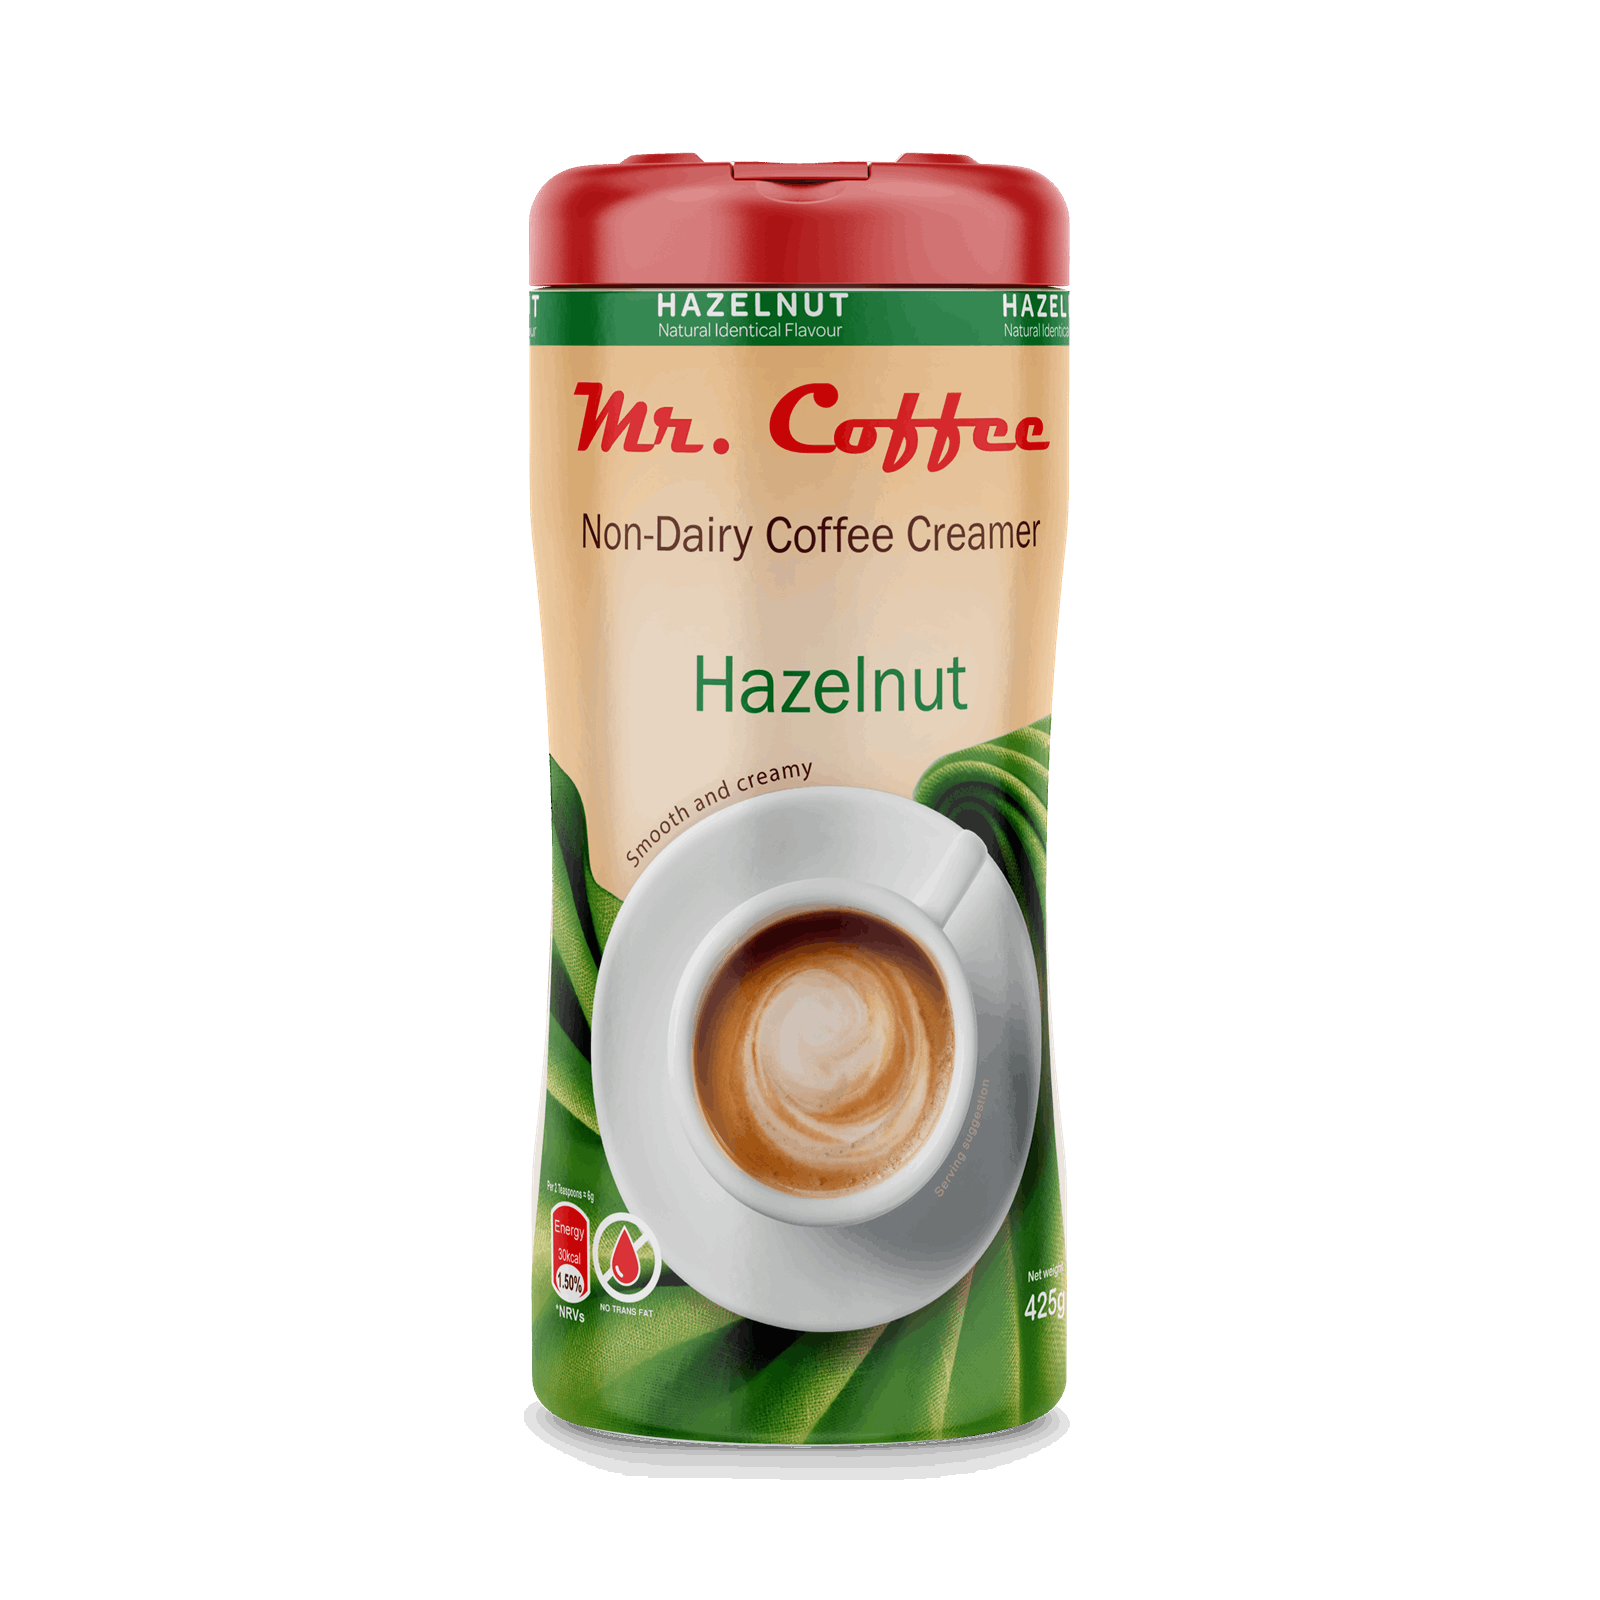 Mr. Coffee Non-dairy Creamers